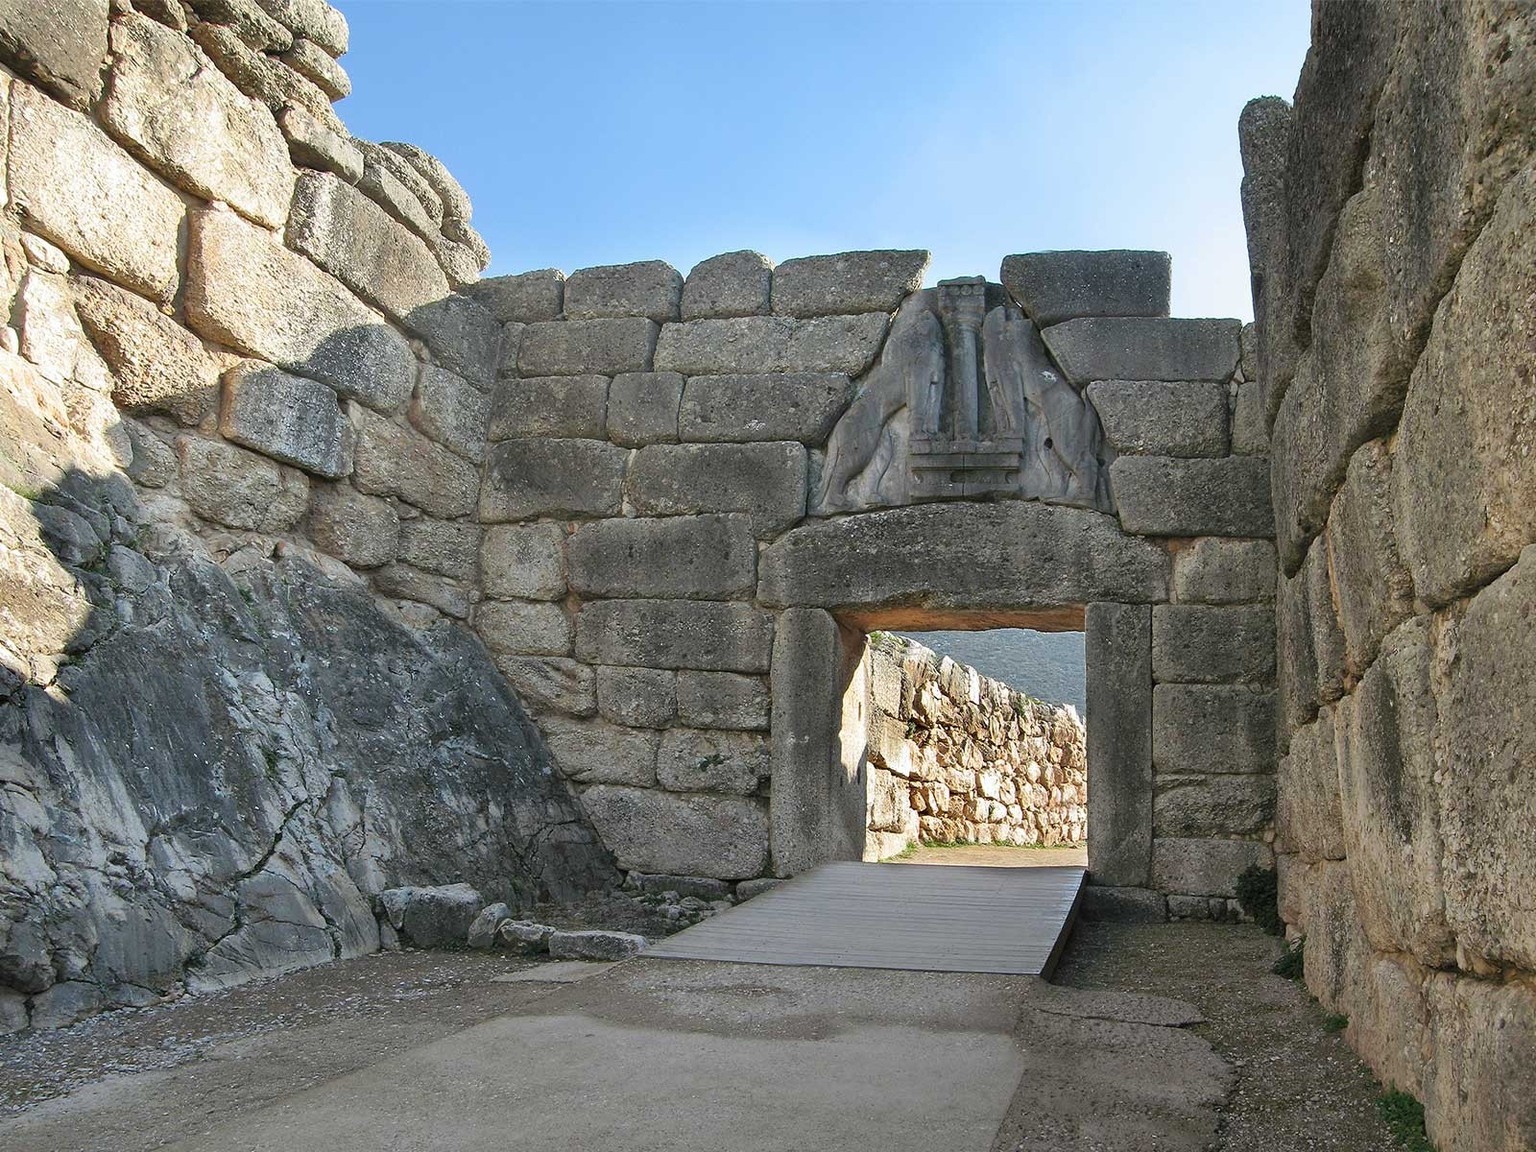 Vom Löwentor in Mykene aus bis an den Thunersee – in der Bronzezeit bildeten sich weit verzweigte Handelswege heraus.
https://commons.wikimedia.org/wiki/File:Lions-Gate-Mycenae.jpg